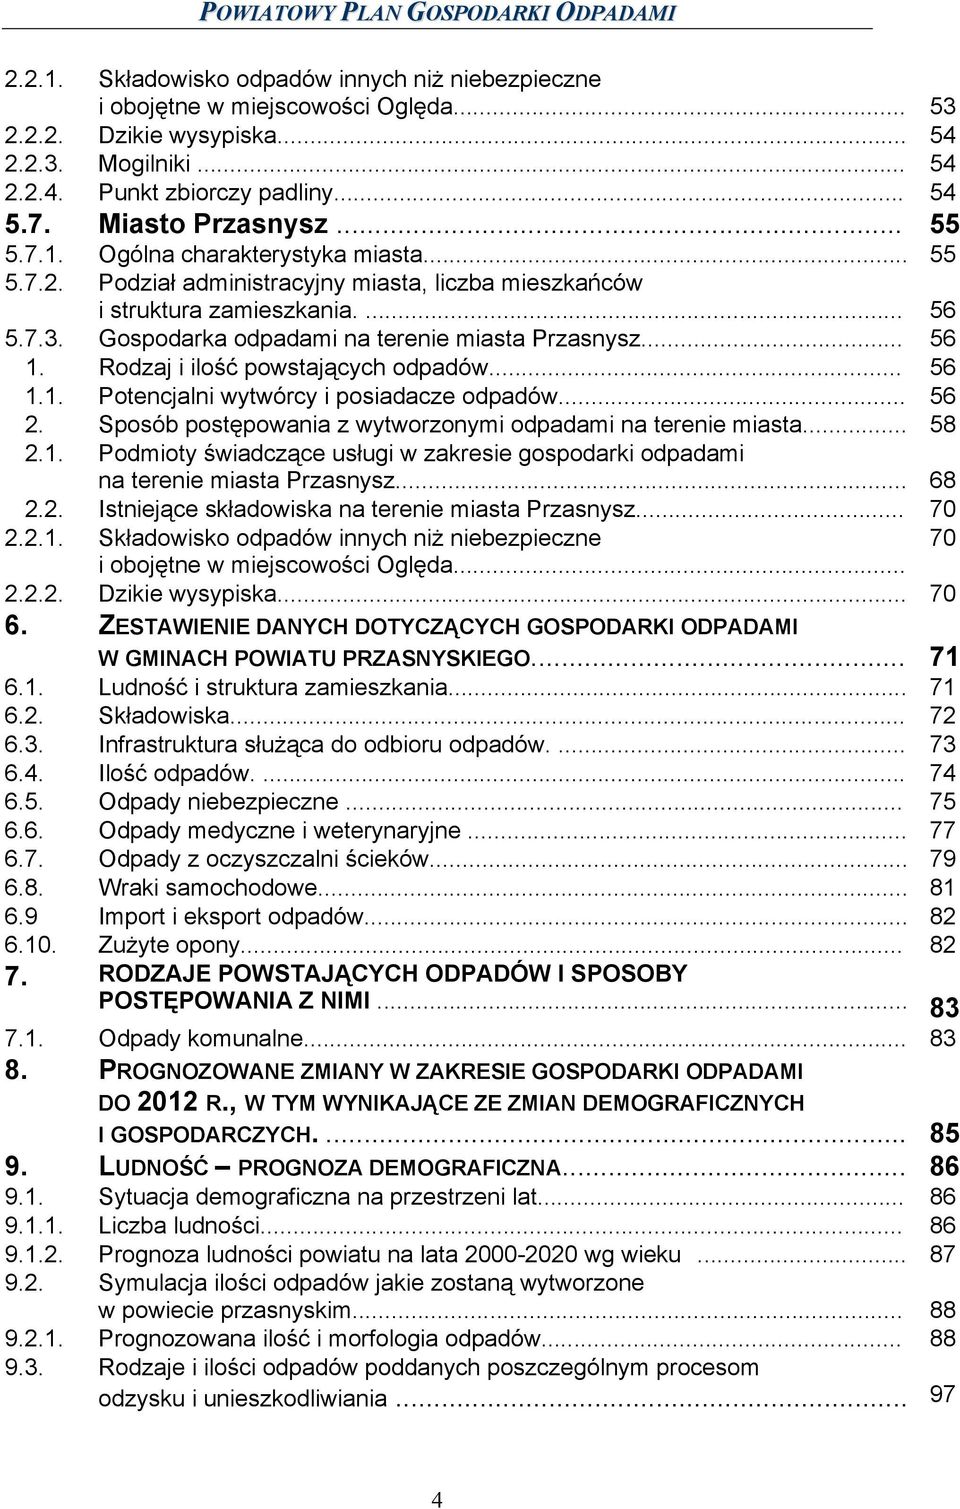 Gospodarka odpadami na terenie miasta Przasnysz... 56 1. Rodzaj i ilość powstających odpadów... 56 1.1. Potencjalni wytwórcy i posiadacze odpadów... 56 2.